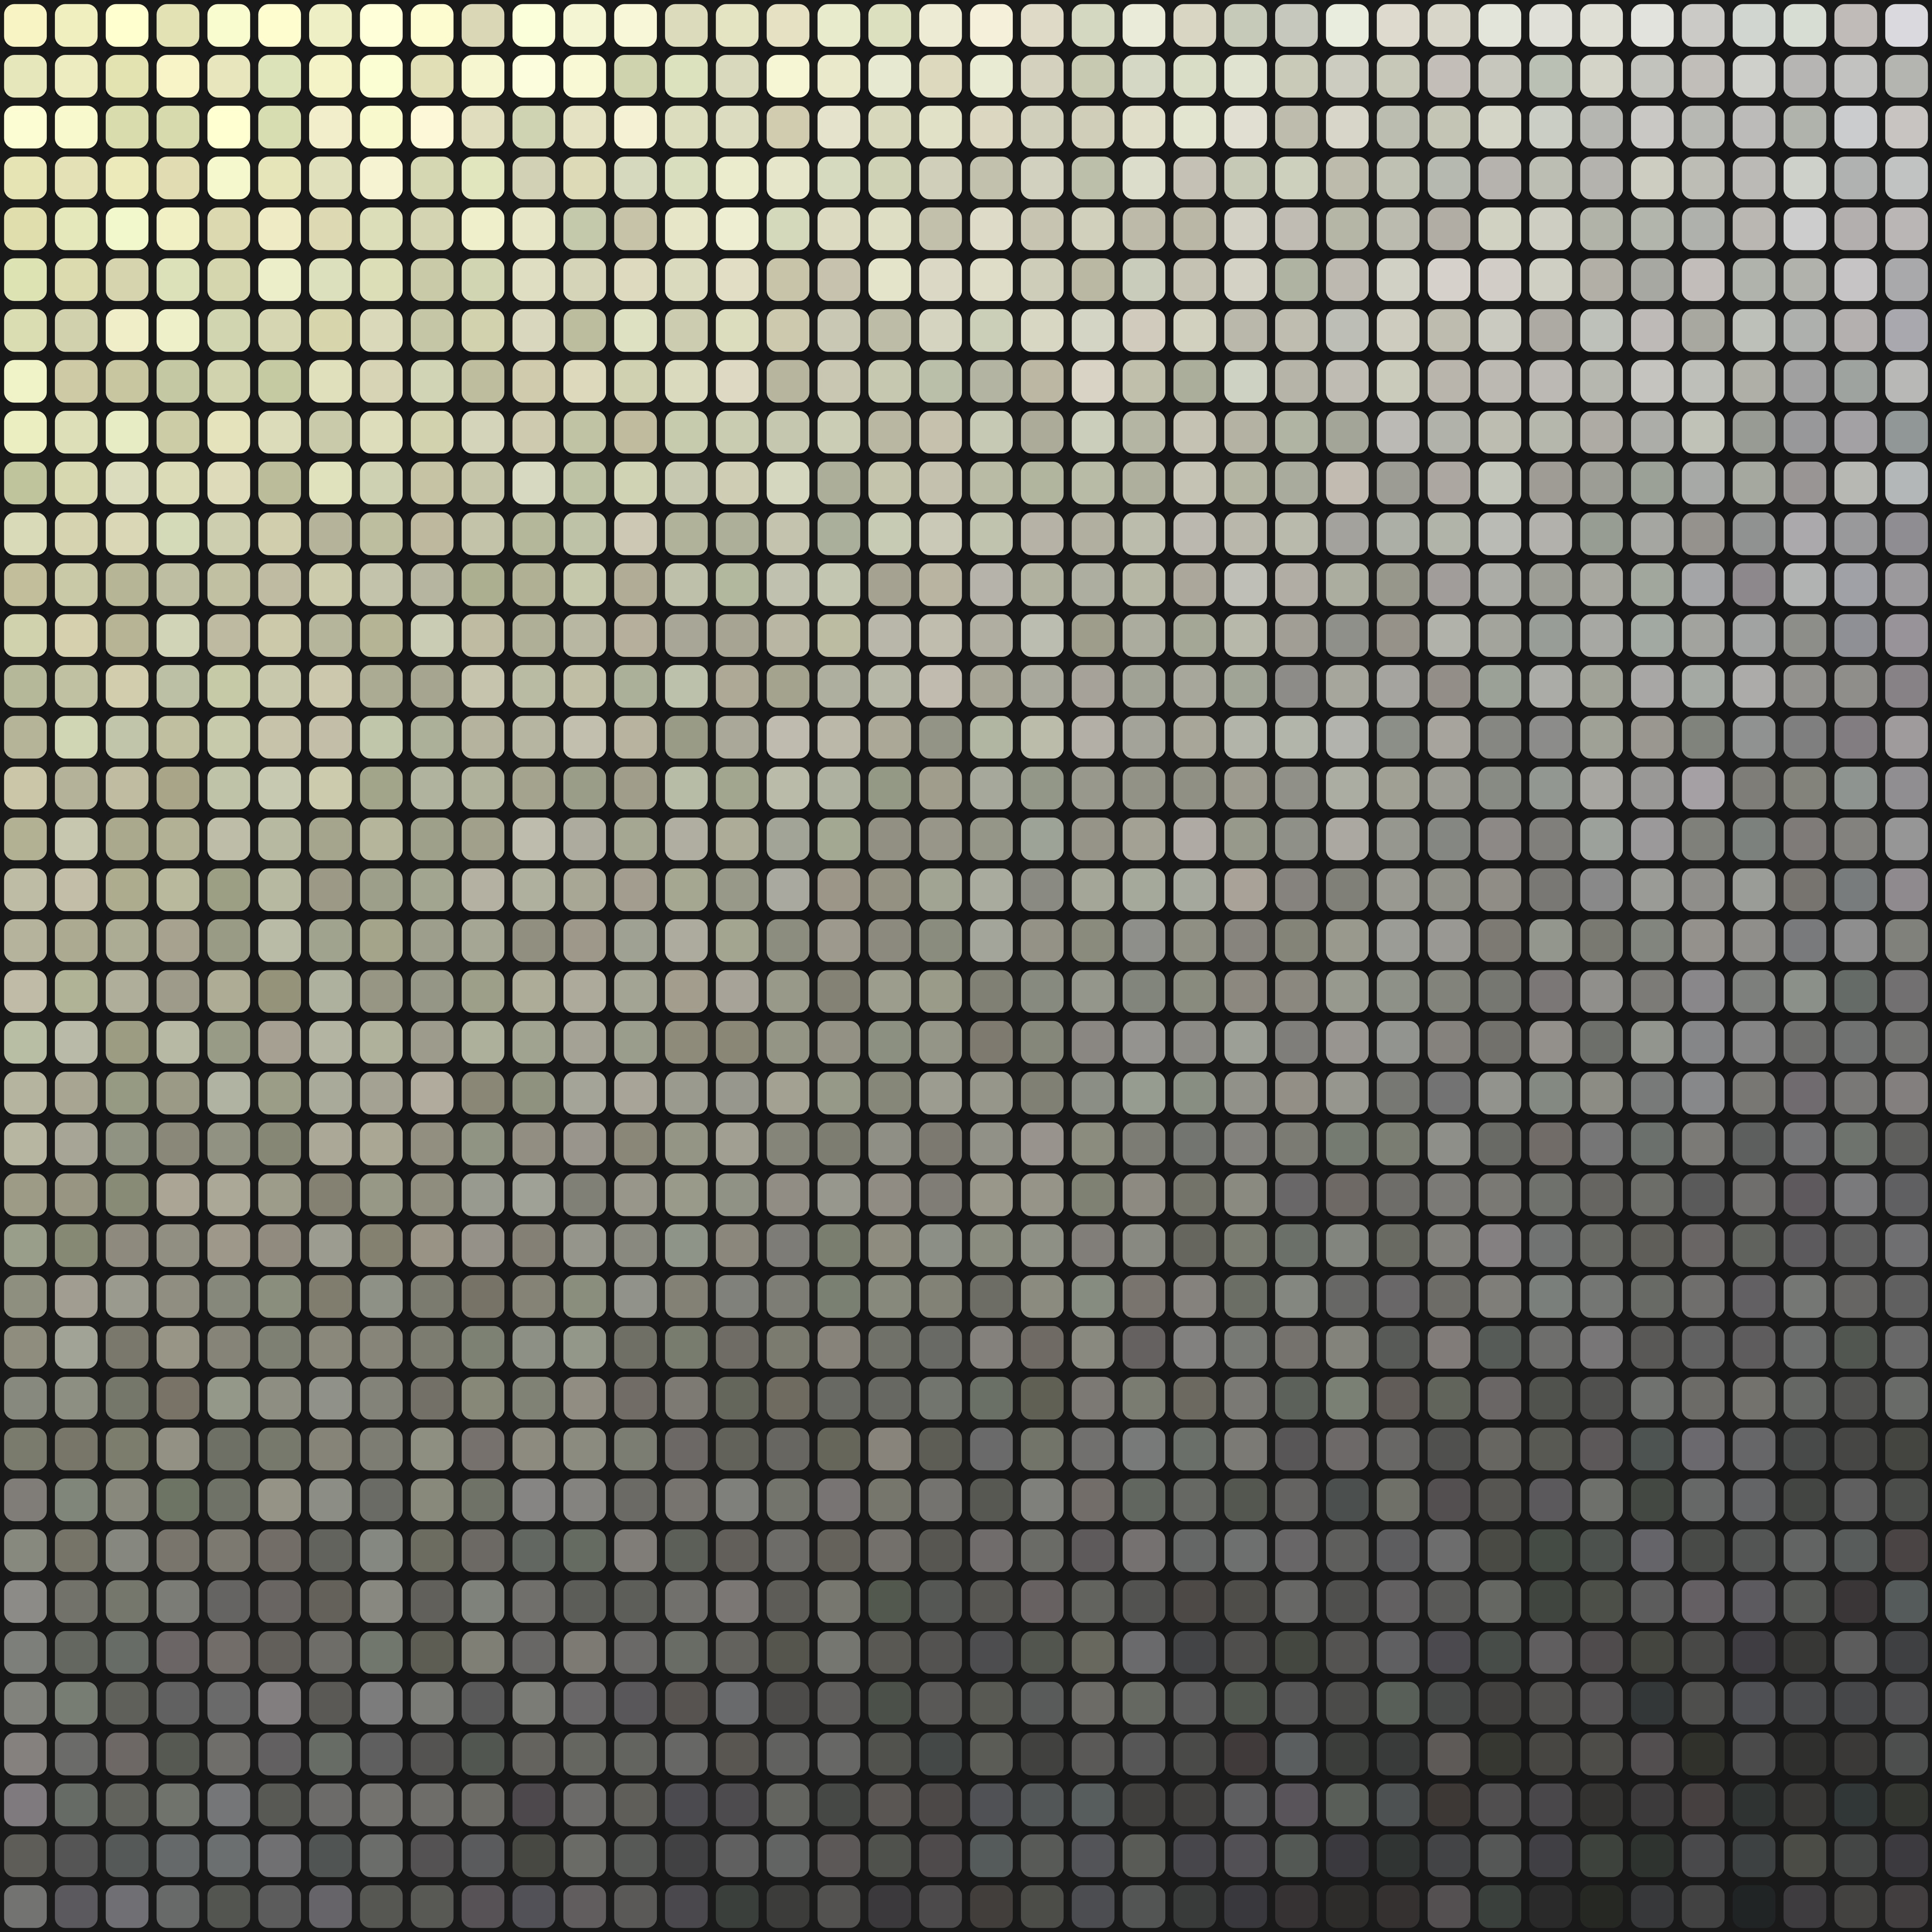 mosaic, texture, textures, bw, chb, monochrome, gradient, pixels